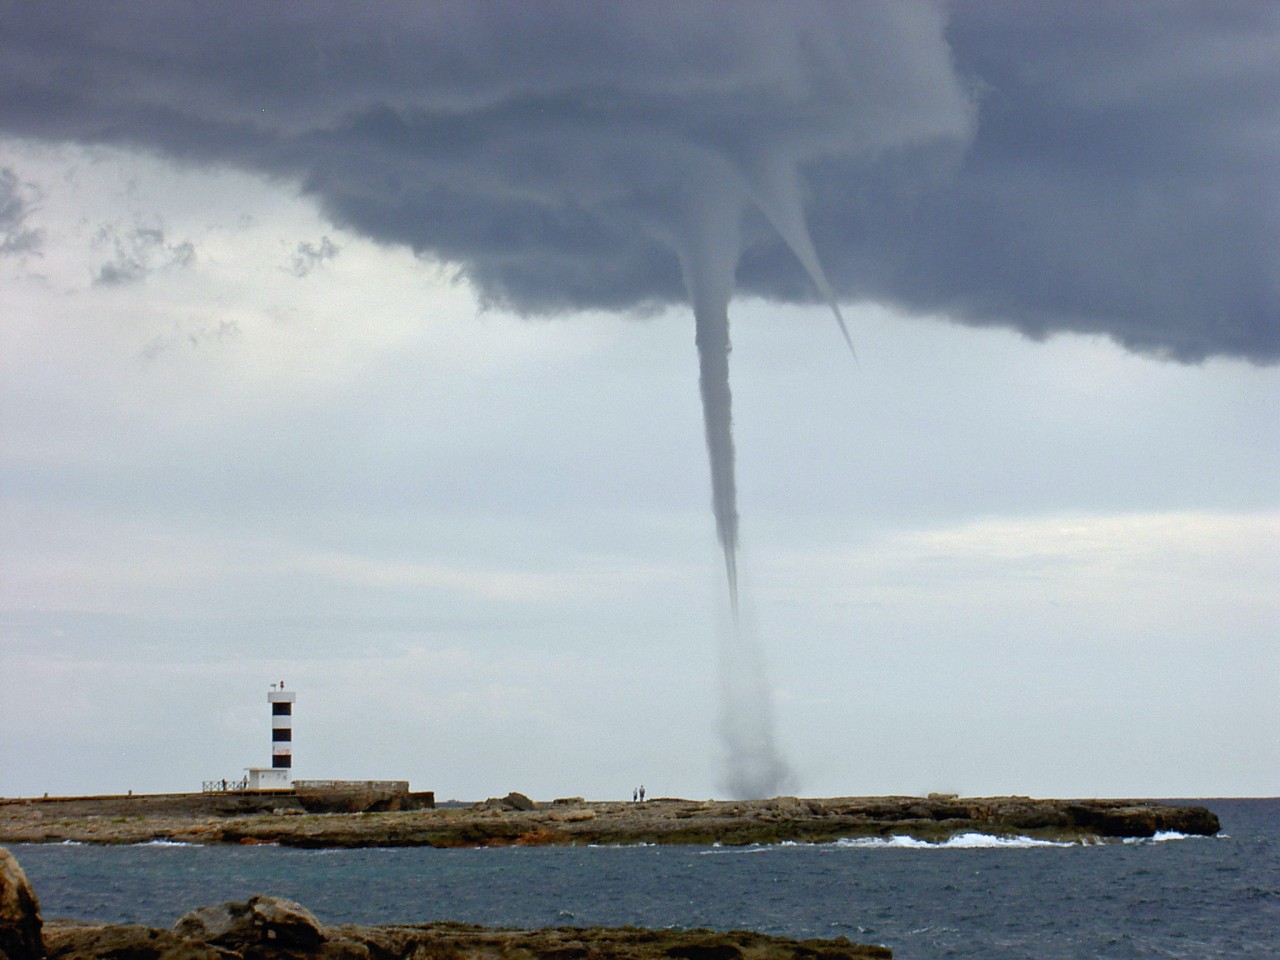 Urlaub auf Mallorca: Auf der Insel wurde ein Tornado gesichtet. (Archivbild)